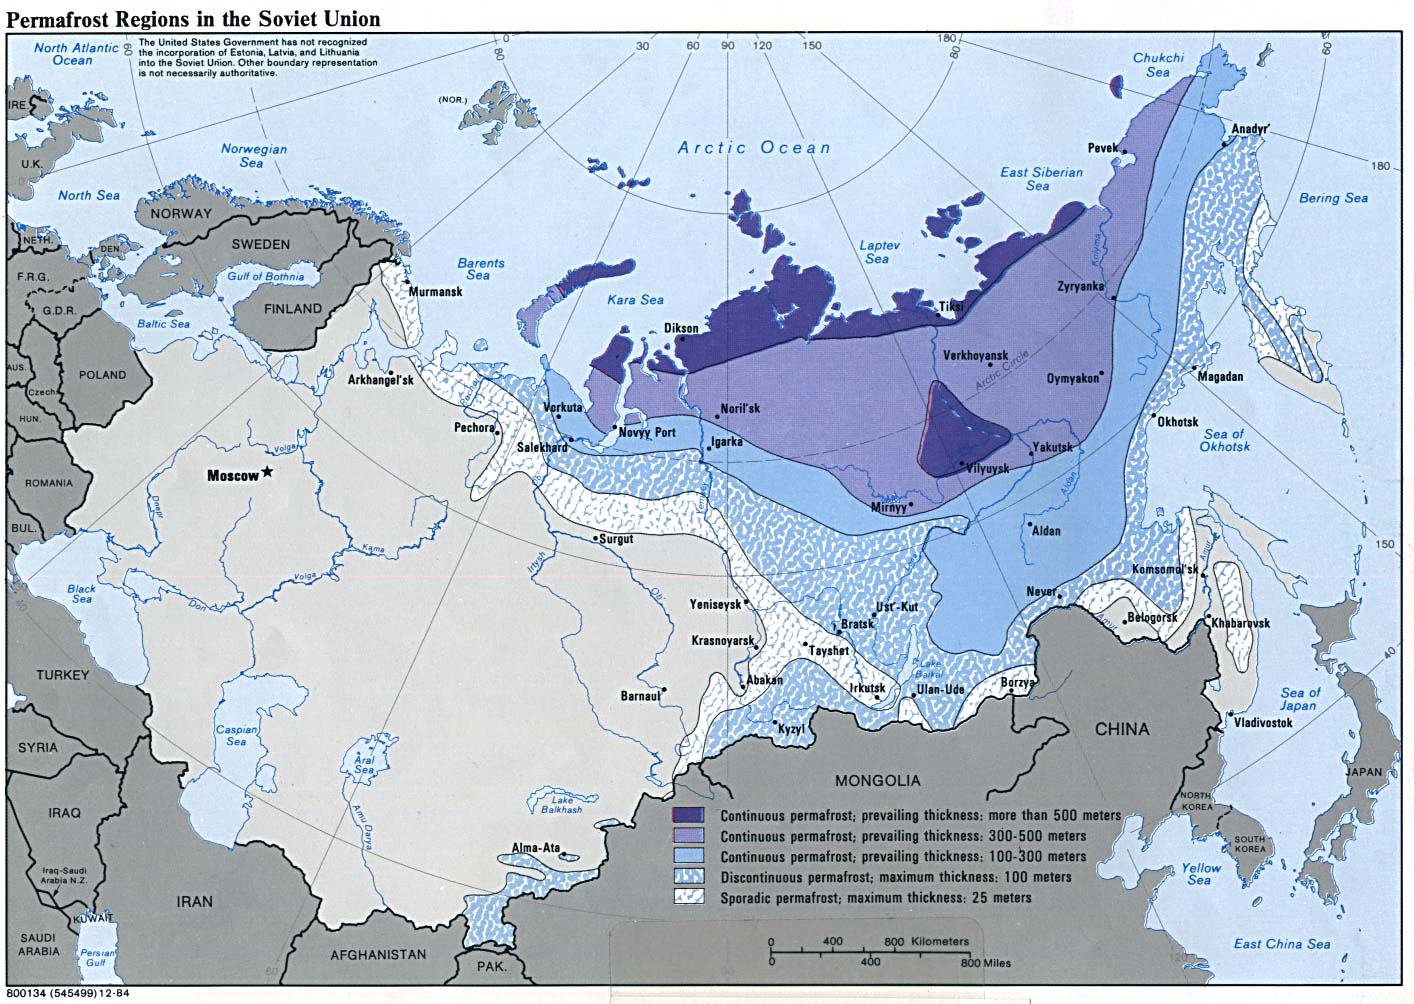 http://www.lib.utexas.edu/maps/commonwealth/soviet_permafrost_84.jpg